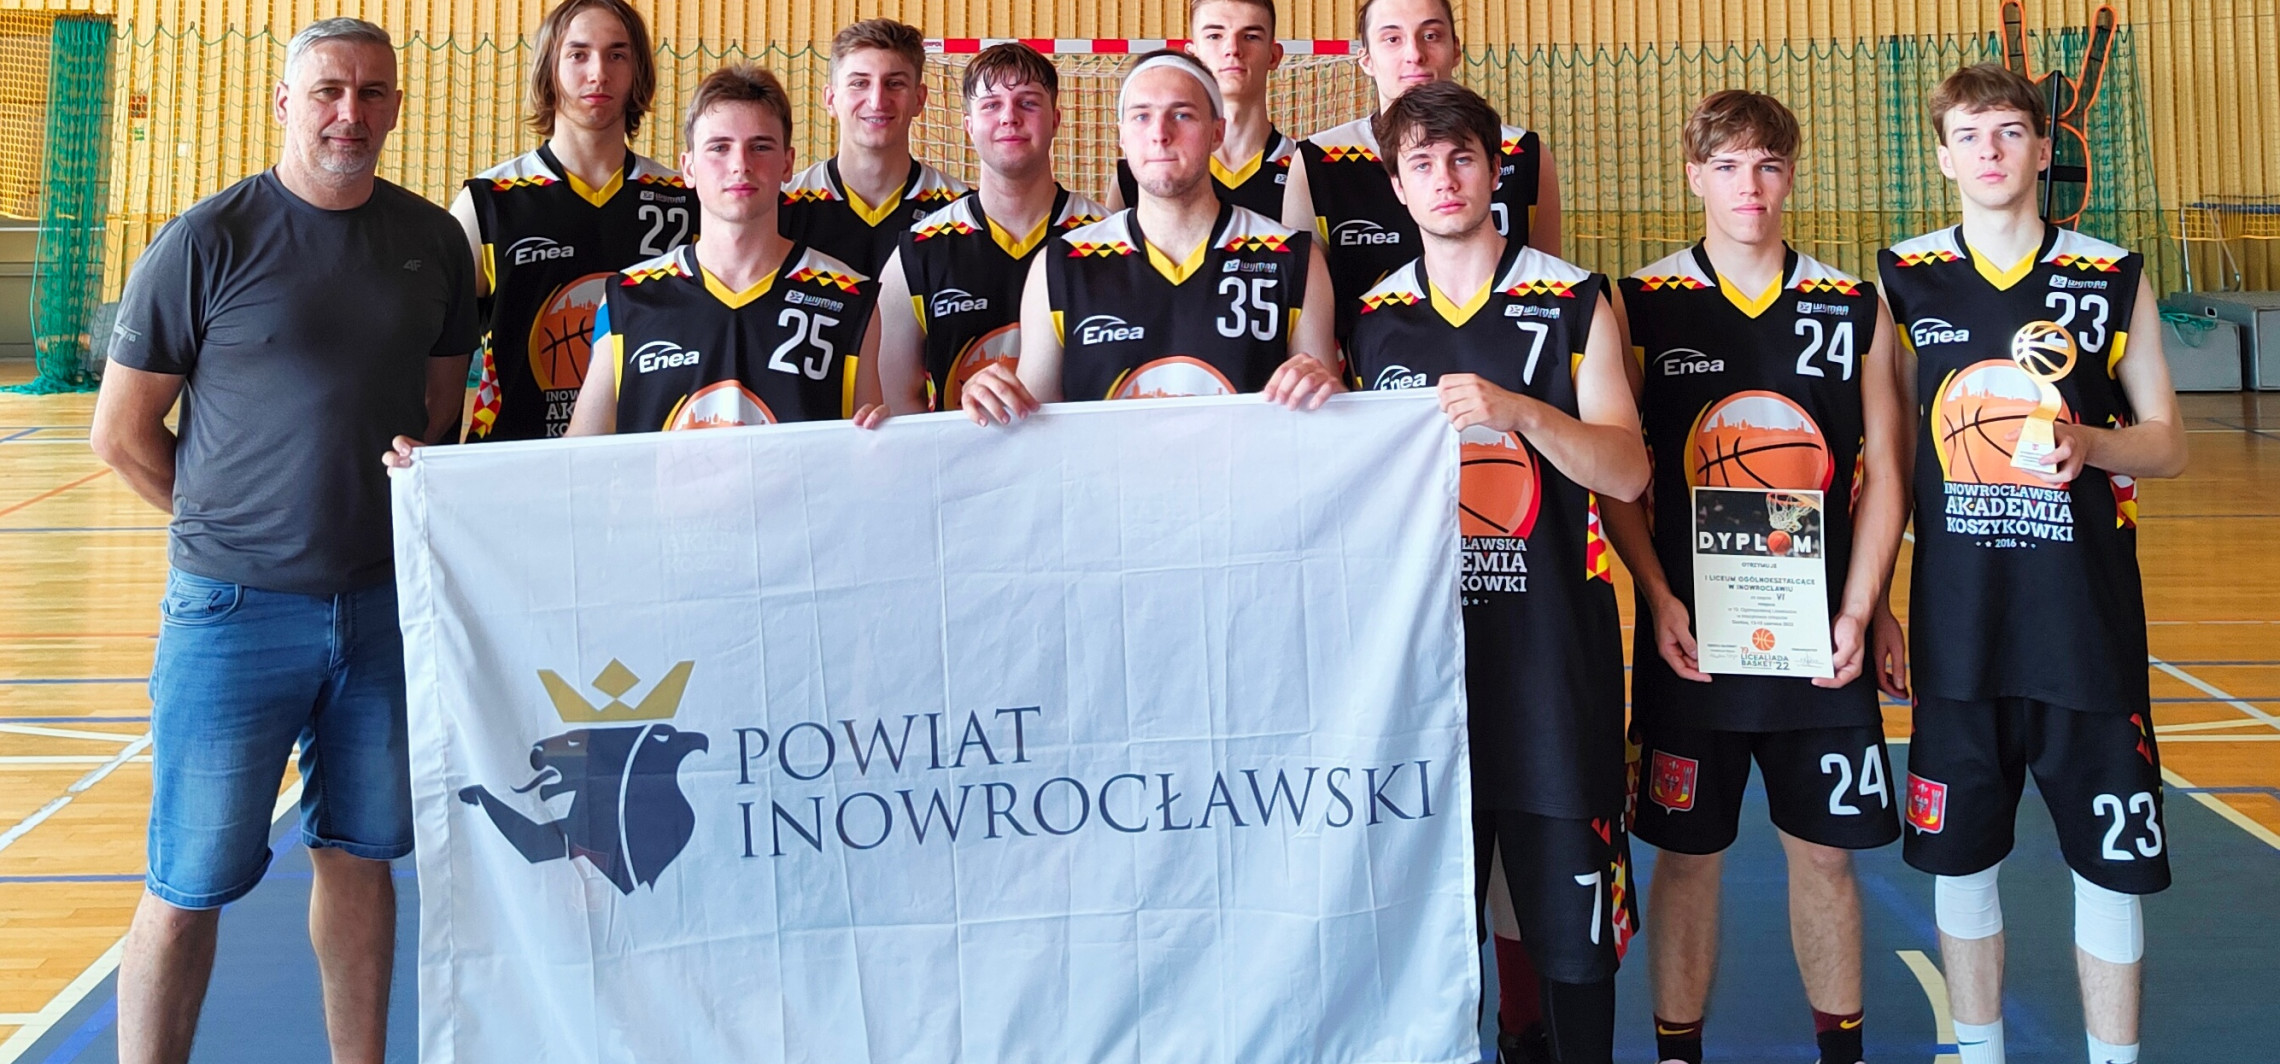 Inowrocław - Koszykarze Kasprowicza szóstą drużyną w Polsce